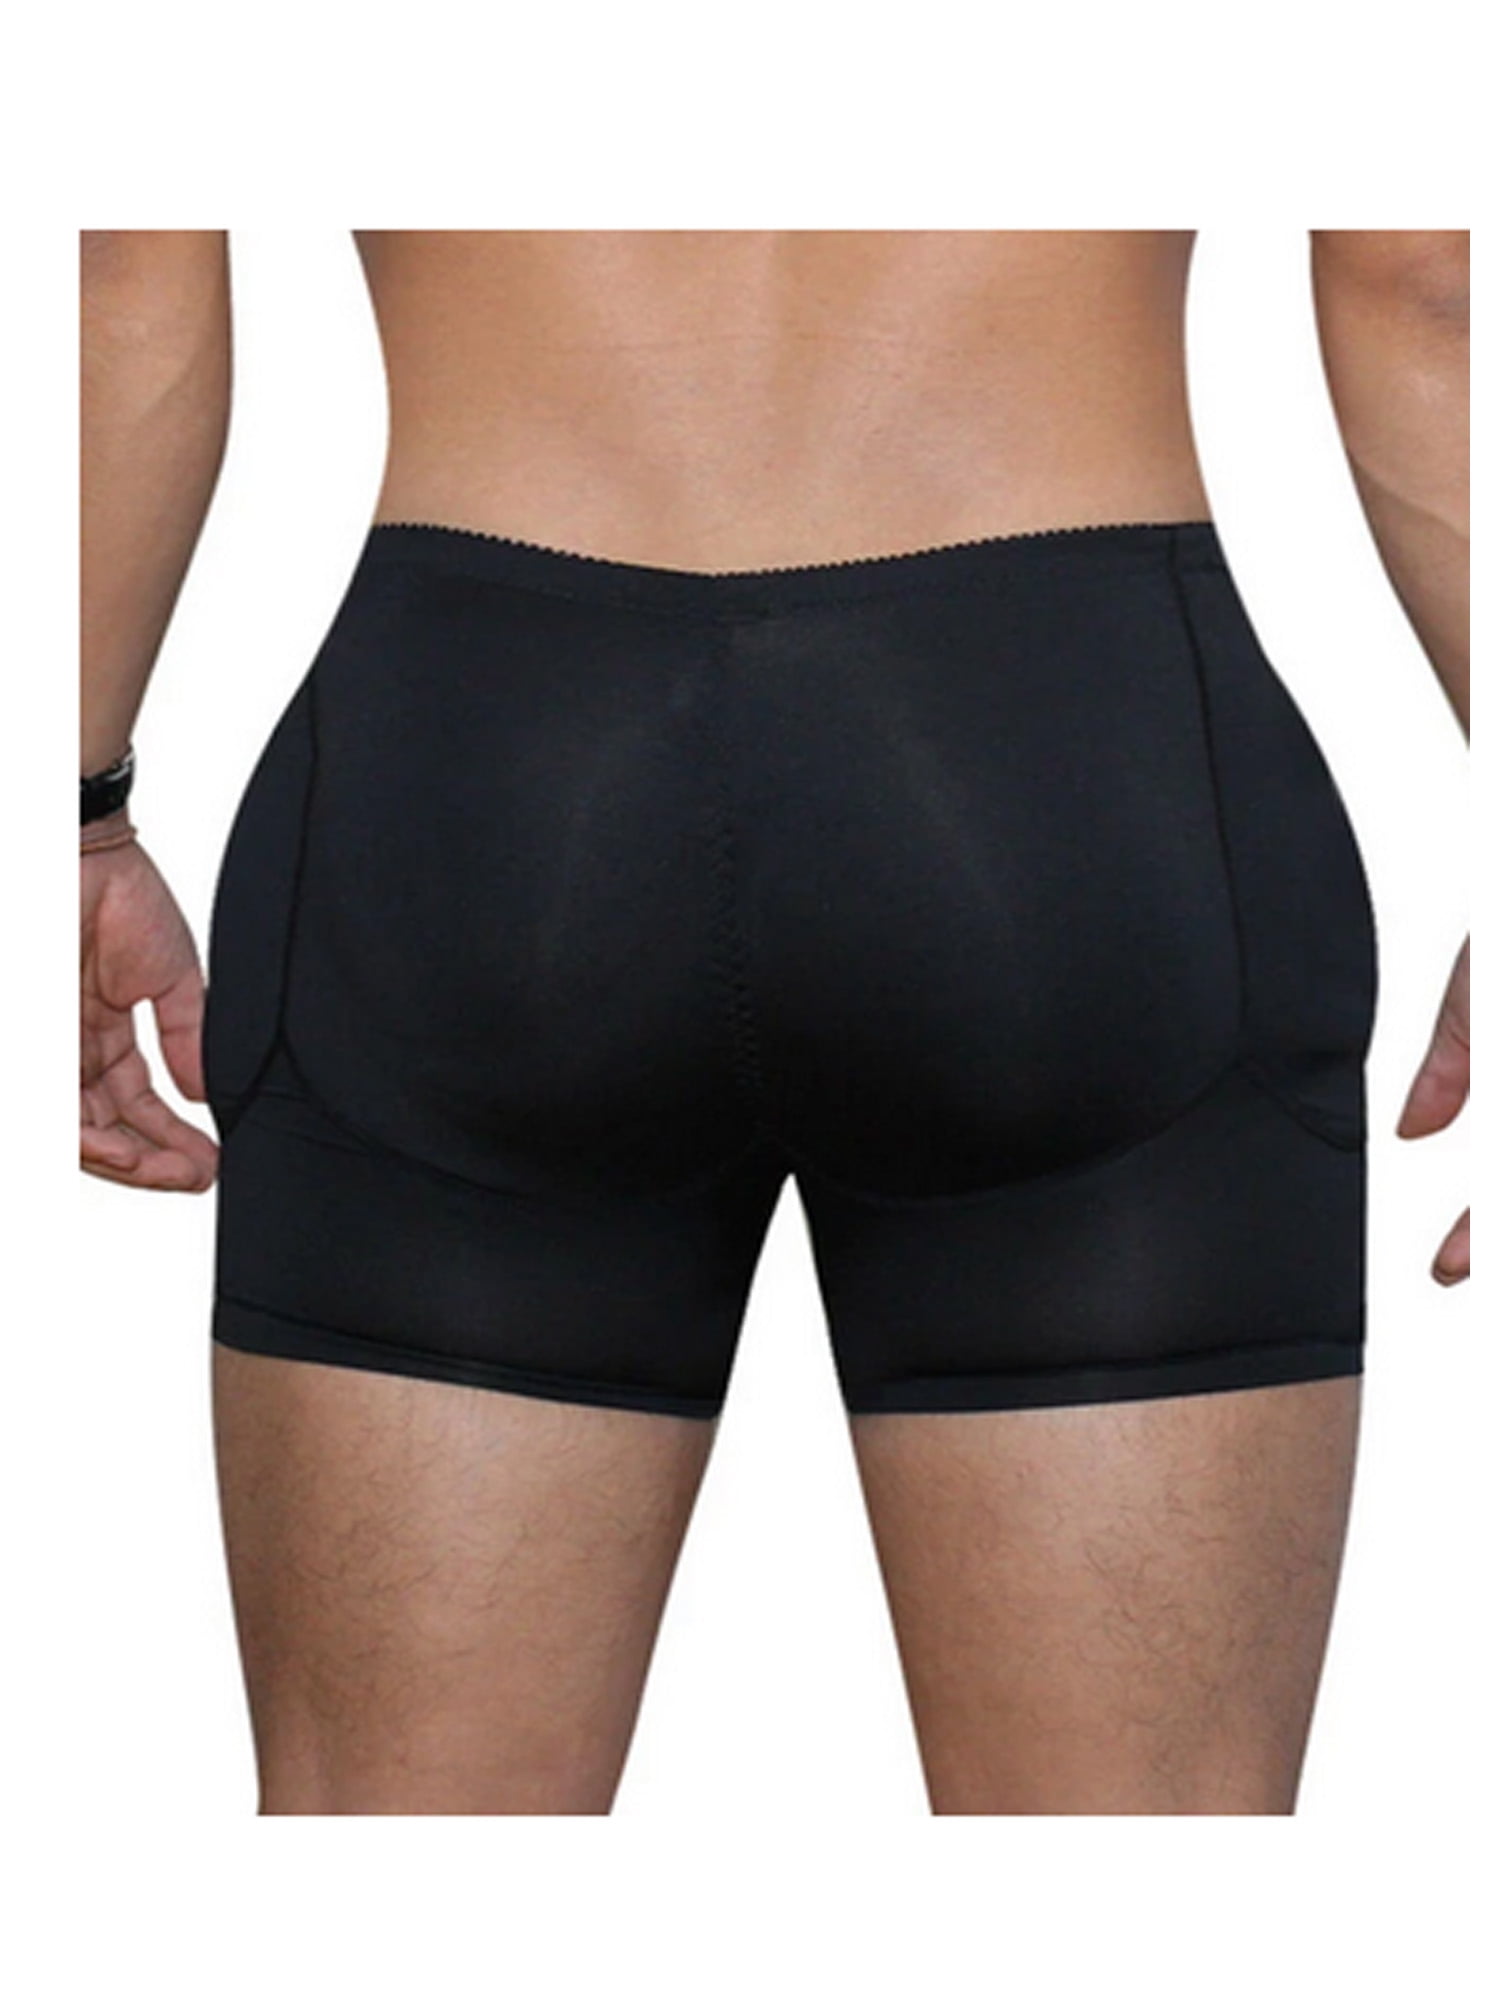 SQUARE HEAD Men's Underwear Bulge Enlarge Enhancing Cup Sponge Pad